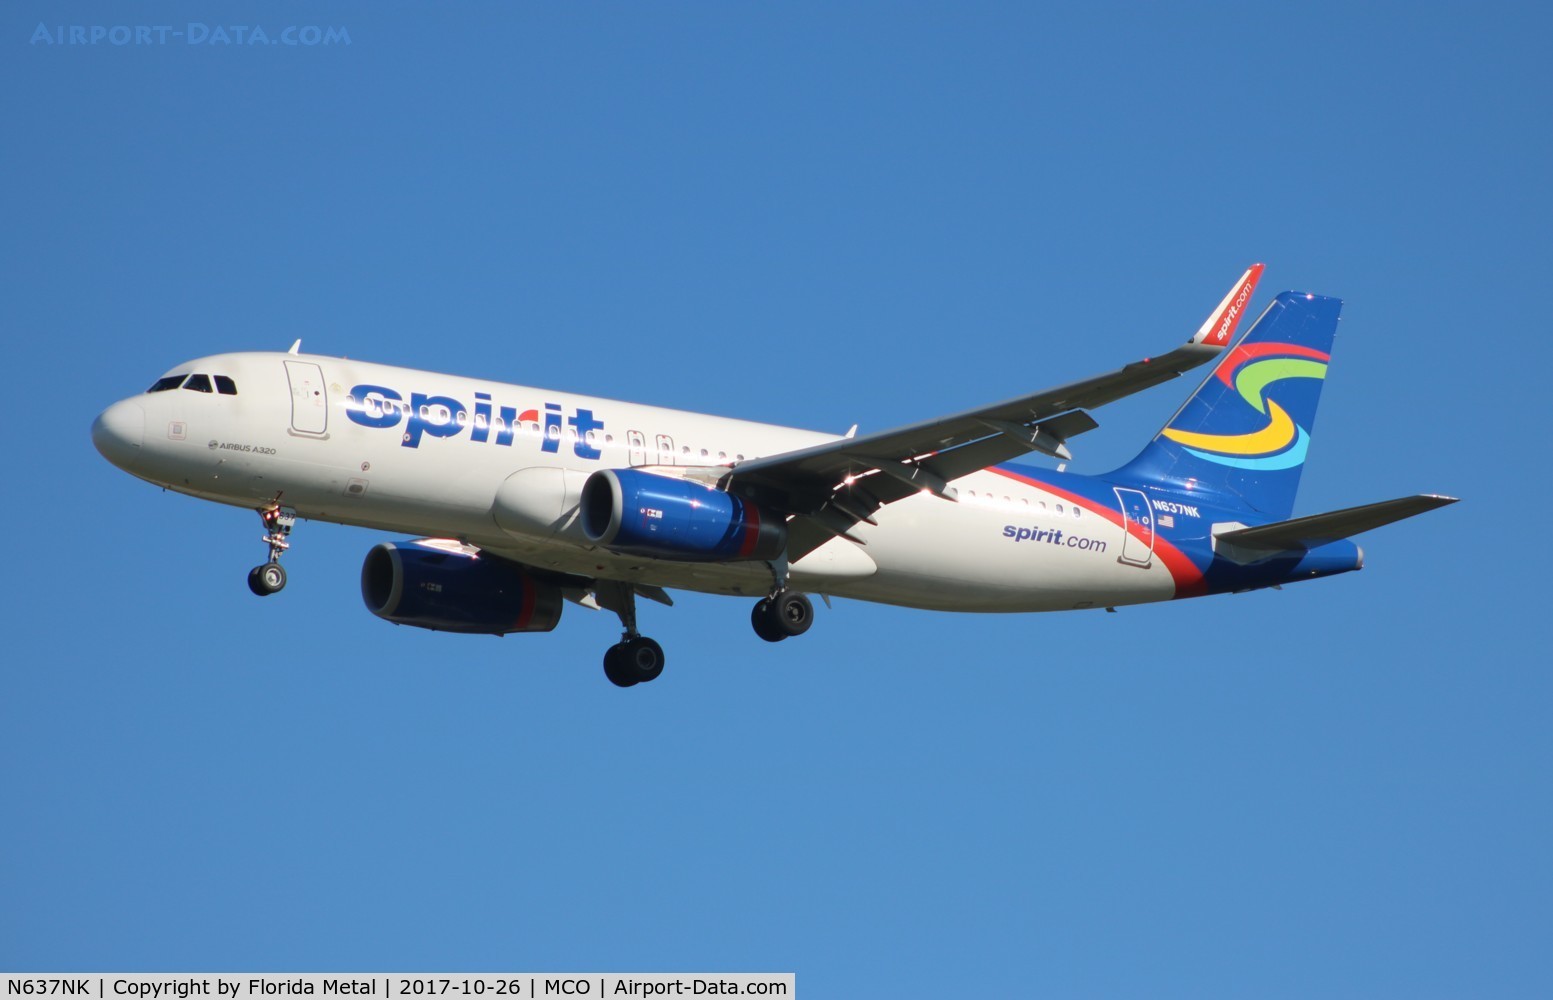 N637NK, 2015 Airbus A320-232 C/N 6436, Spirit